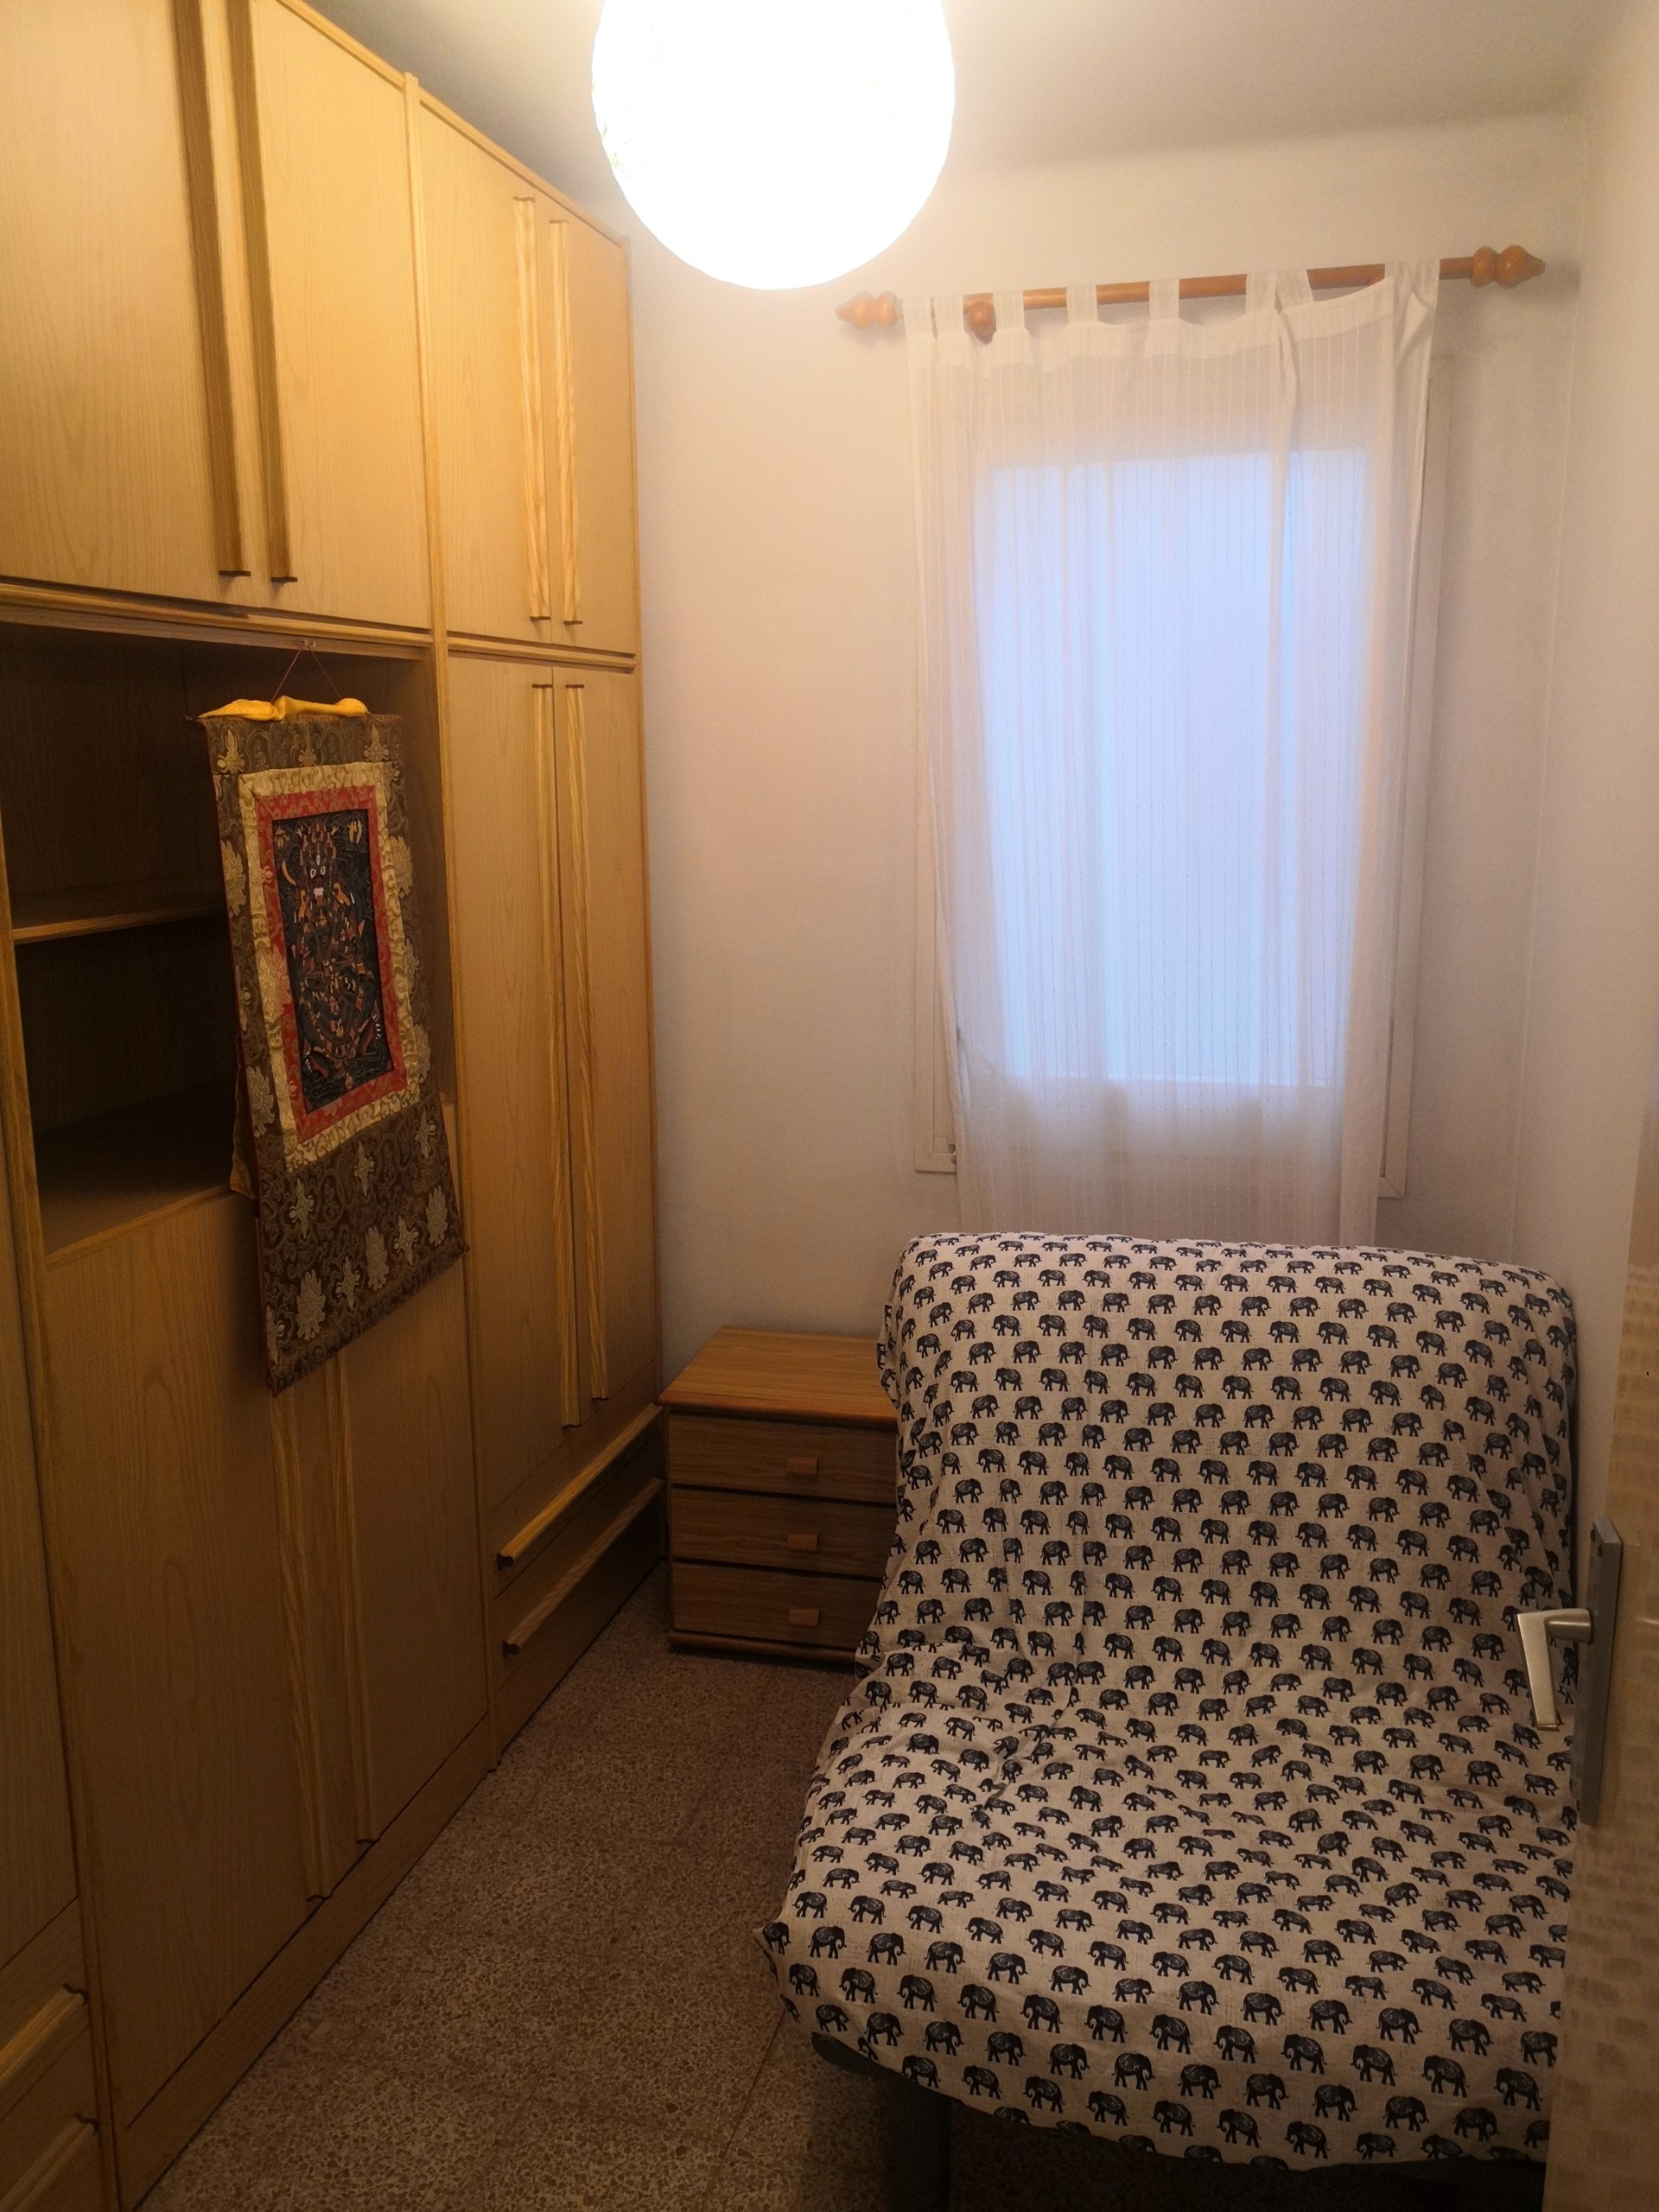 Habitación pequeña, con cama individual, un armari